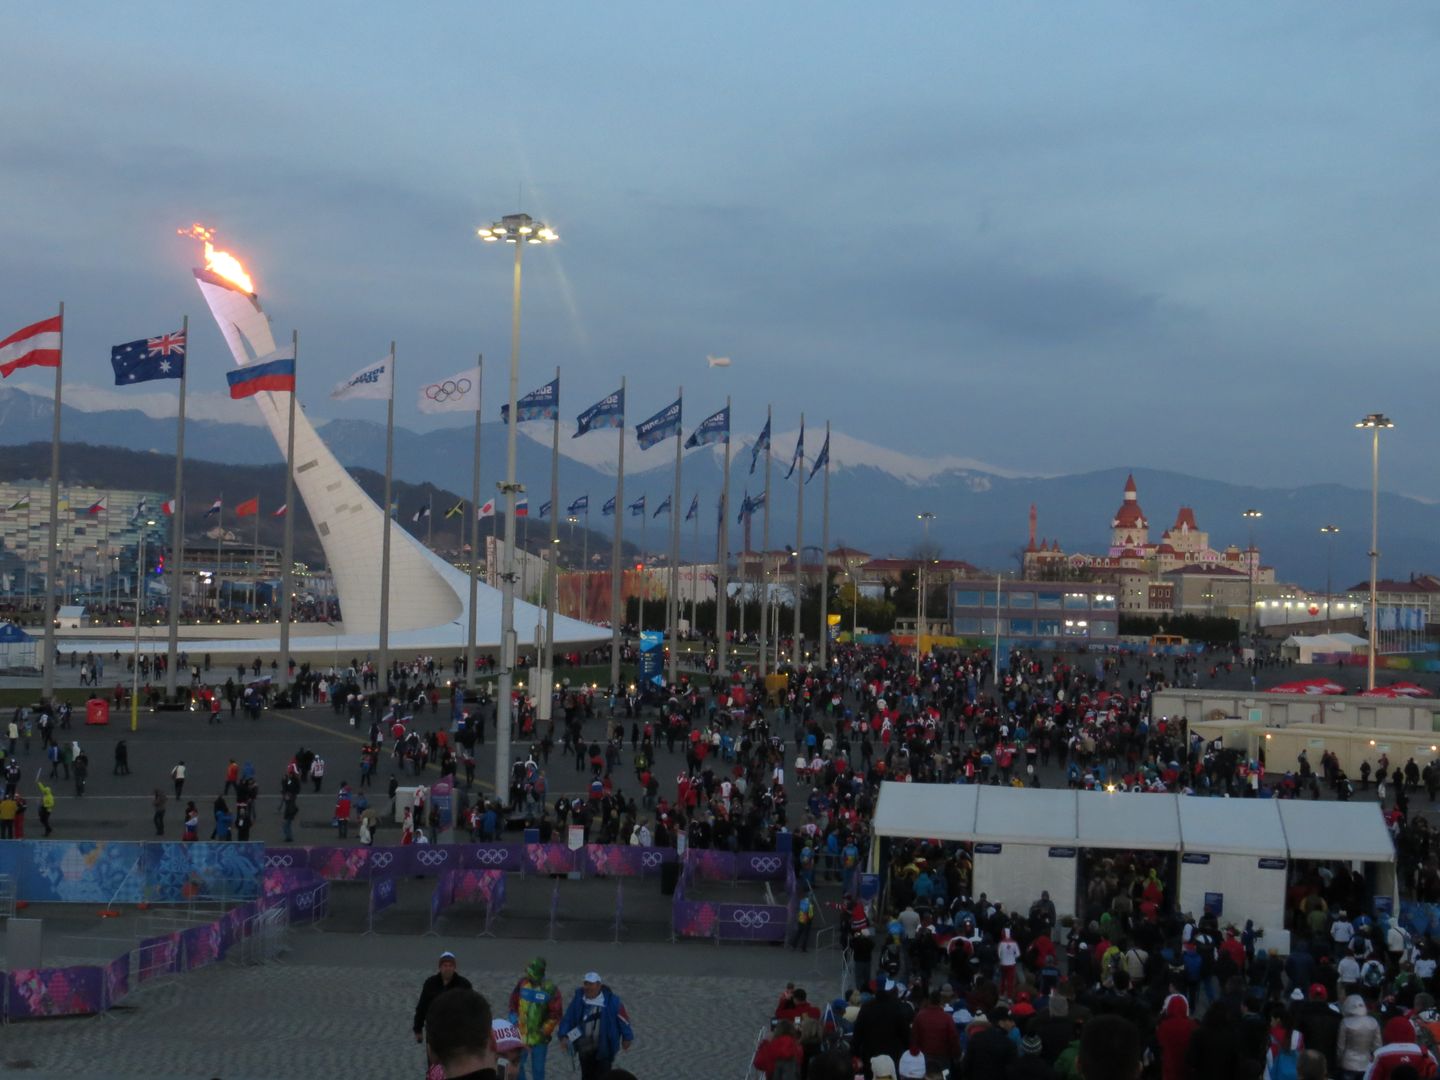 Олимпиада в Сочи. Февраль 2014. Прибрежный кластер